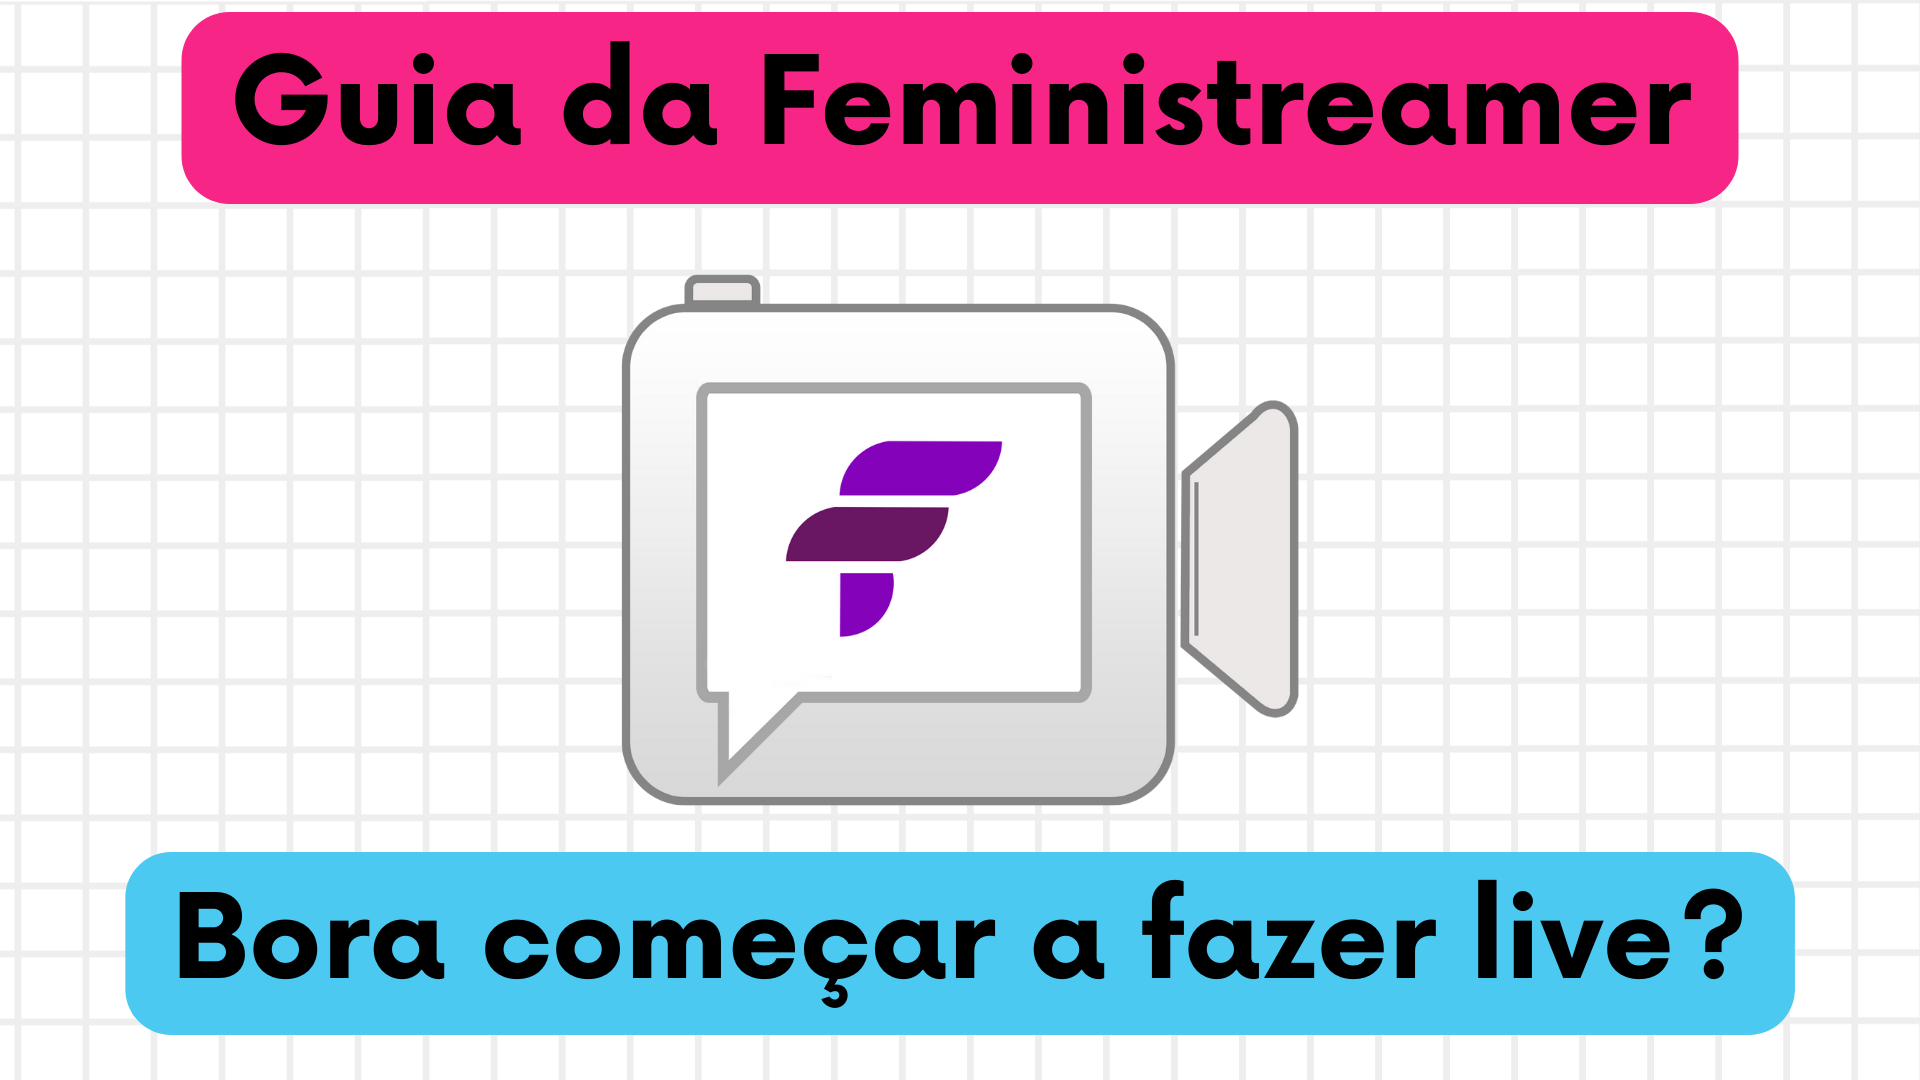 Fundo quadriculado, título "Guia da Feministreamer" com fundo rosa, Logo da Feministech ao meio, e no rodapé, texto "Bora começar a fazer live?" em fundo azul